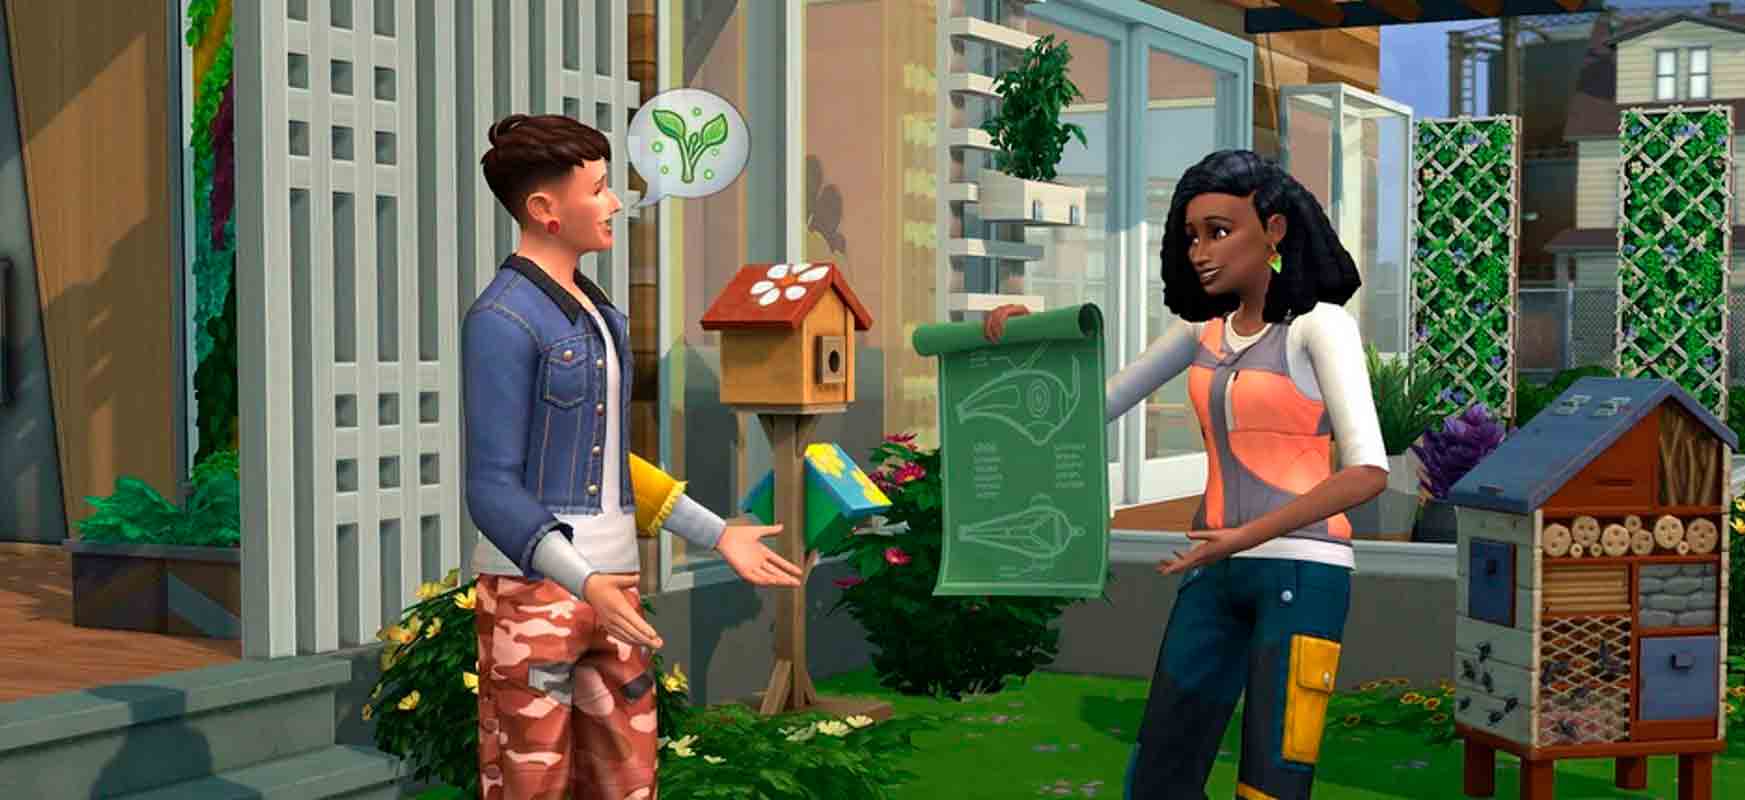 Interacción entre Sims